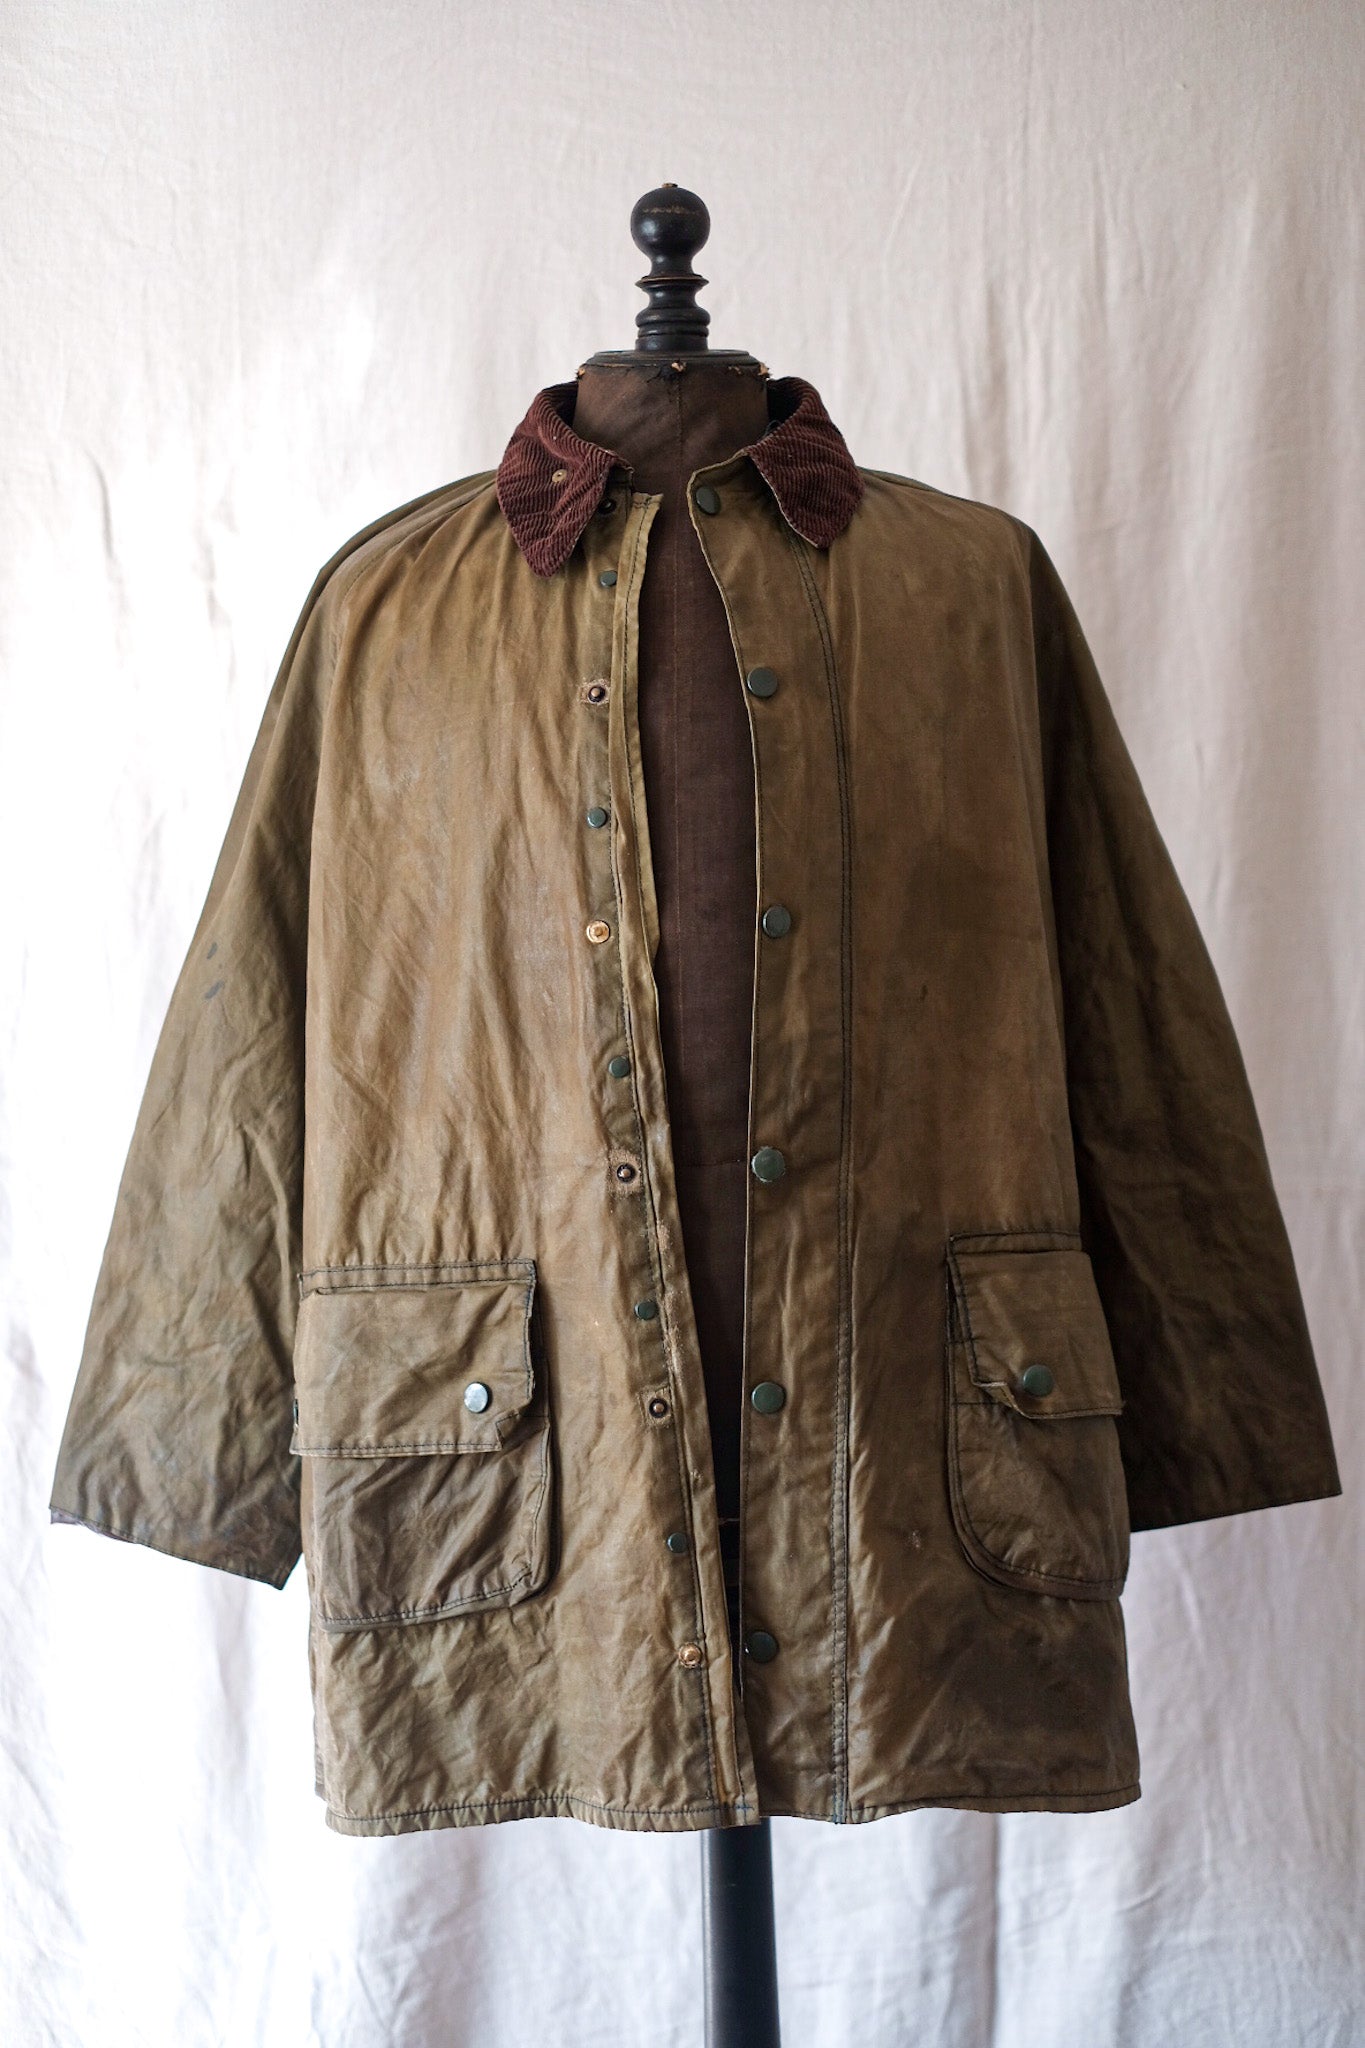 [~ 70's] Barbour vintage "Gamefair Jacket" 1 Crest